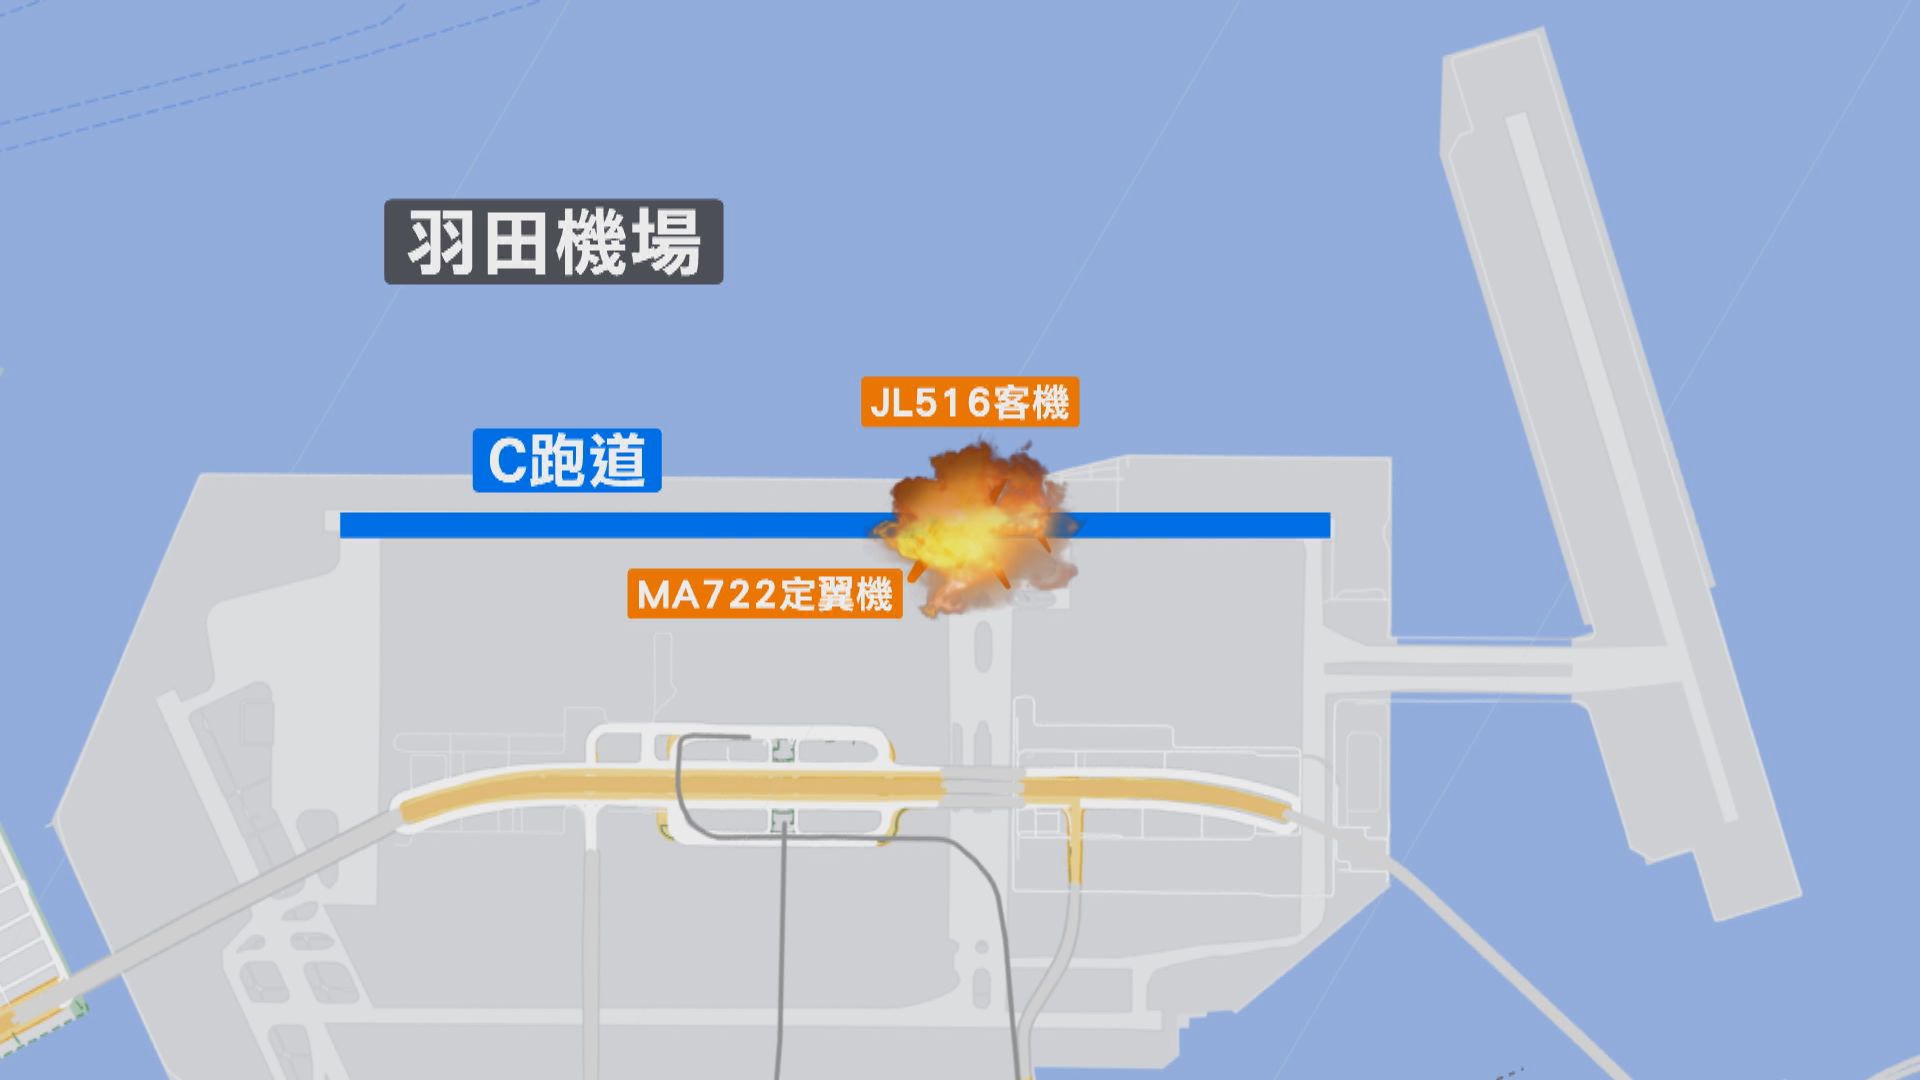 日本撞機事故 通話紀錄顯示定翼機未獲准前往跑道